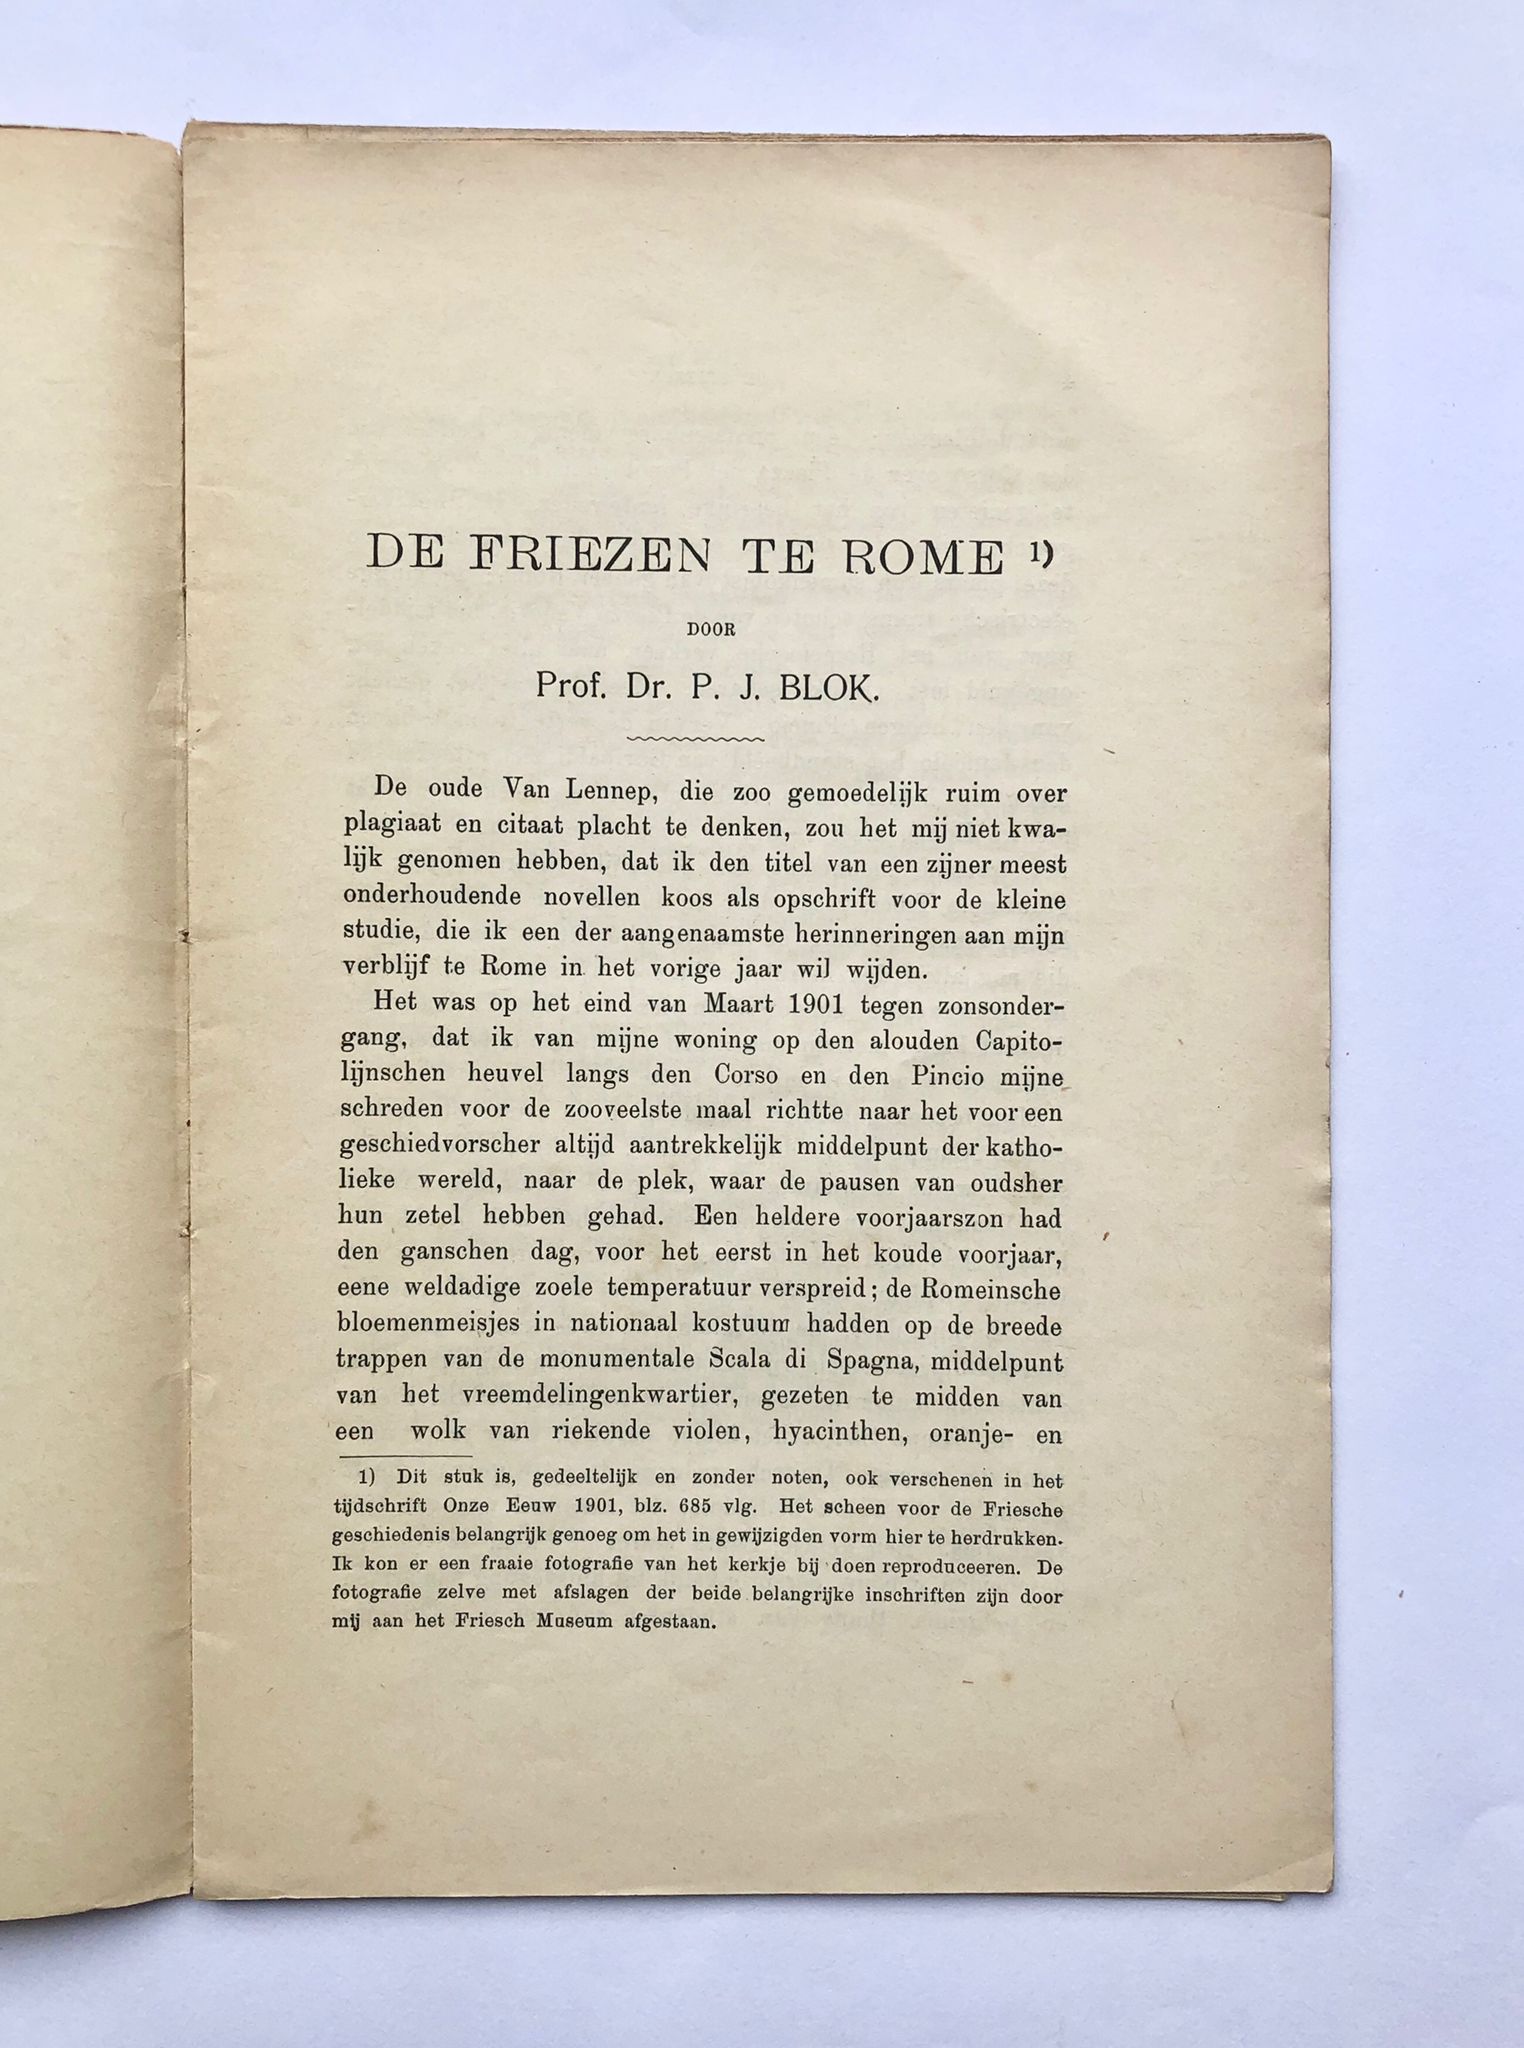 [Friesland, 1902] De Friezen te Rome, In: Onze Eeuw, Jaargang 2, 1902, 33 pp.